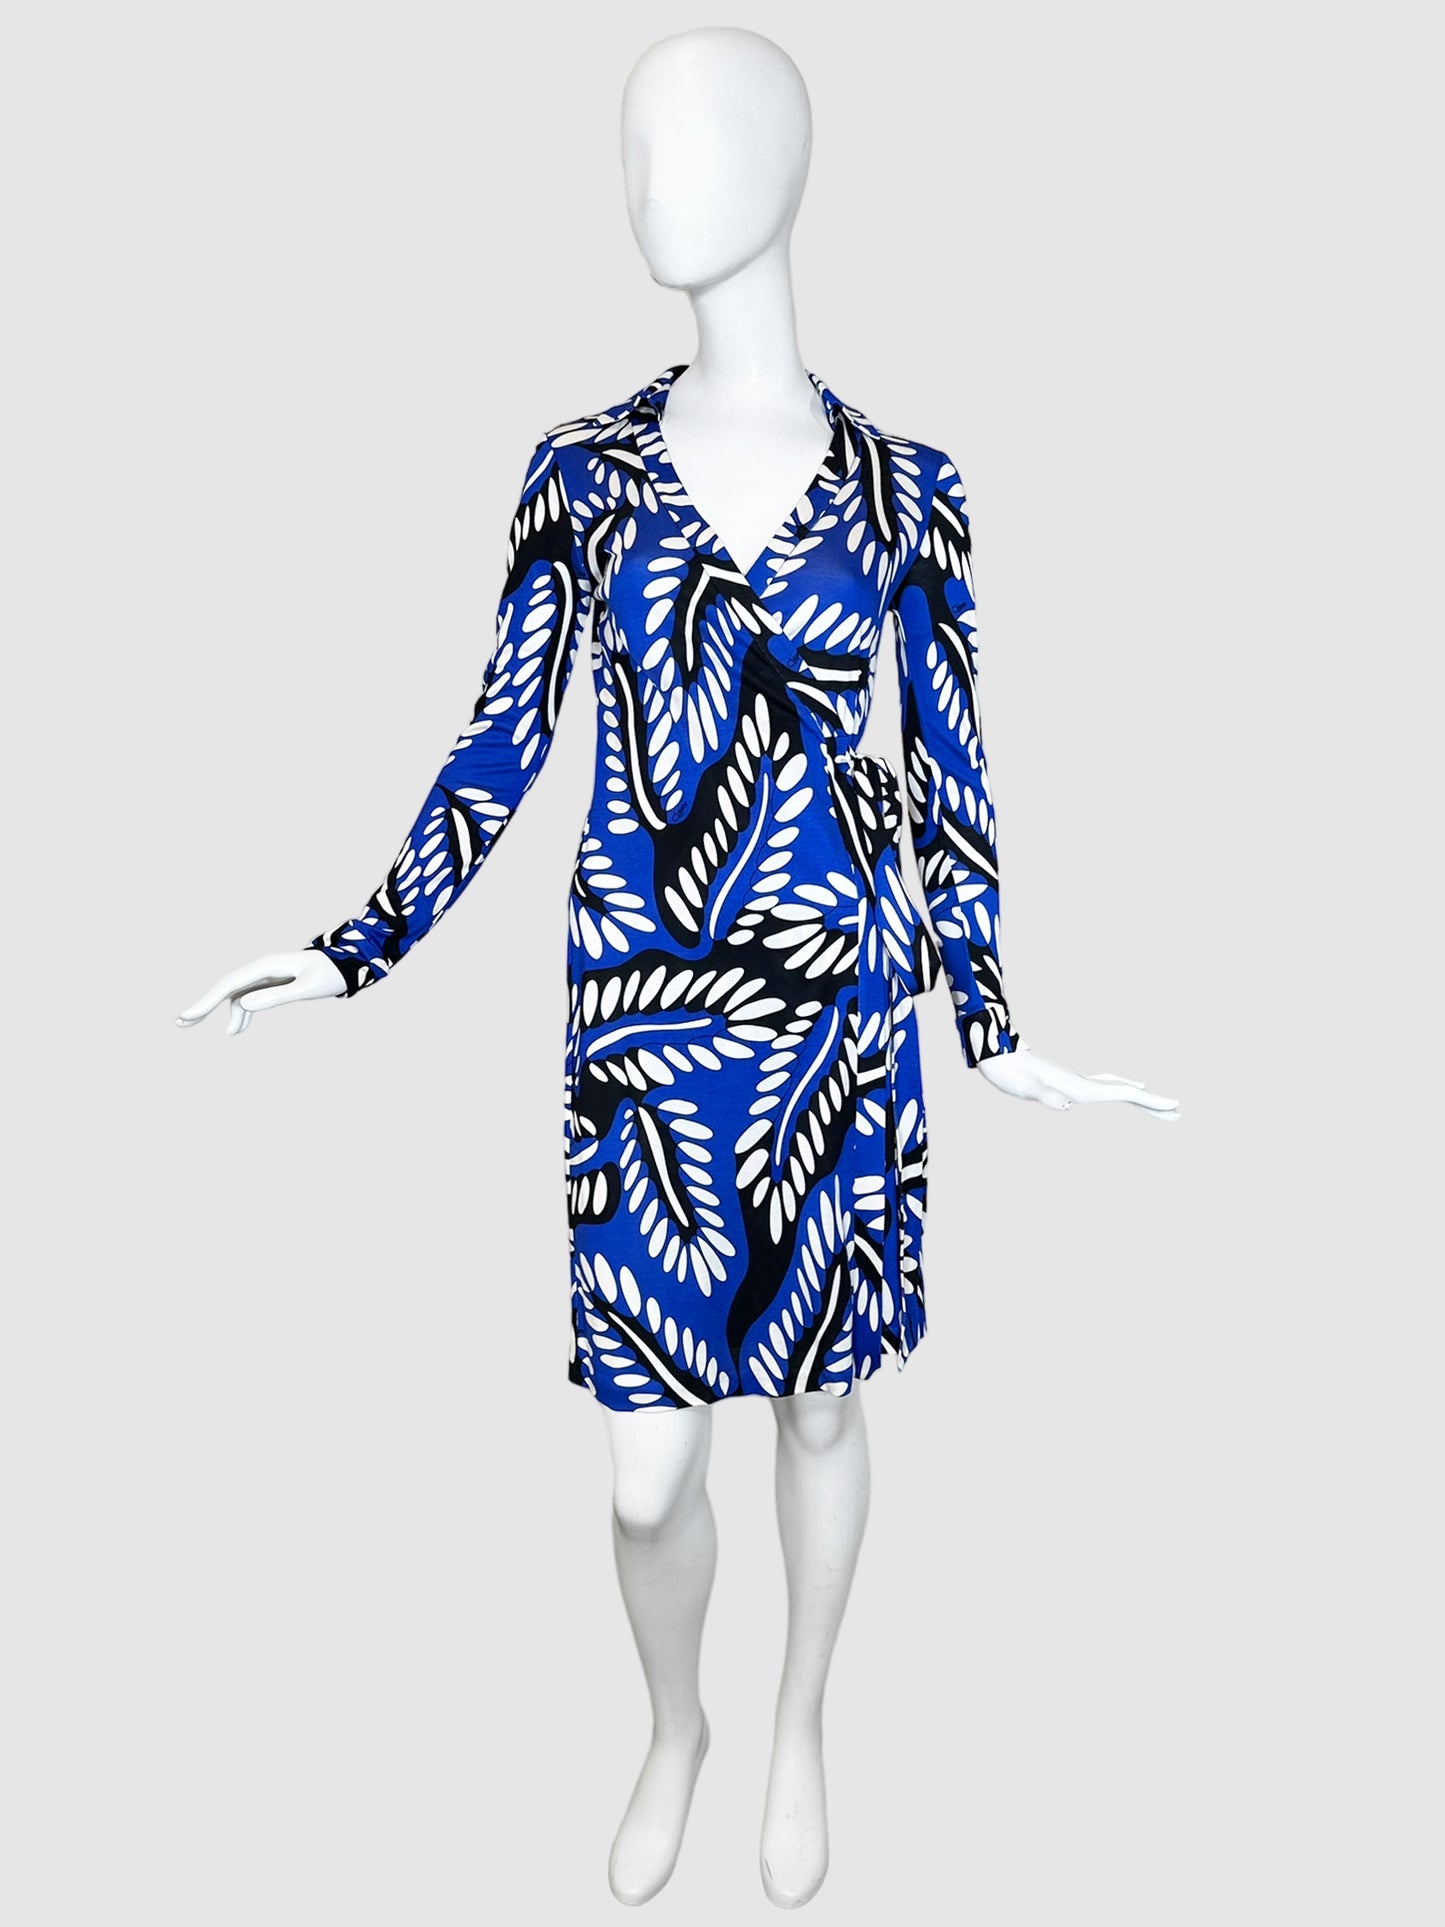 Diane von Furstenberg Floral Wrap Dress - Size 4